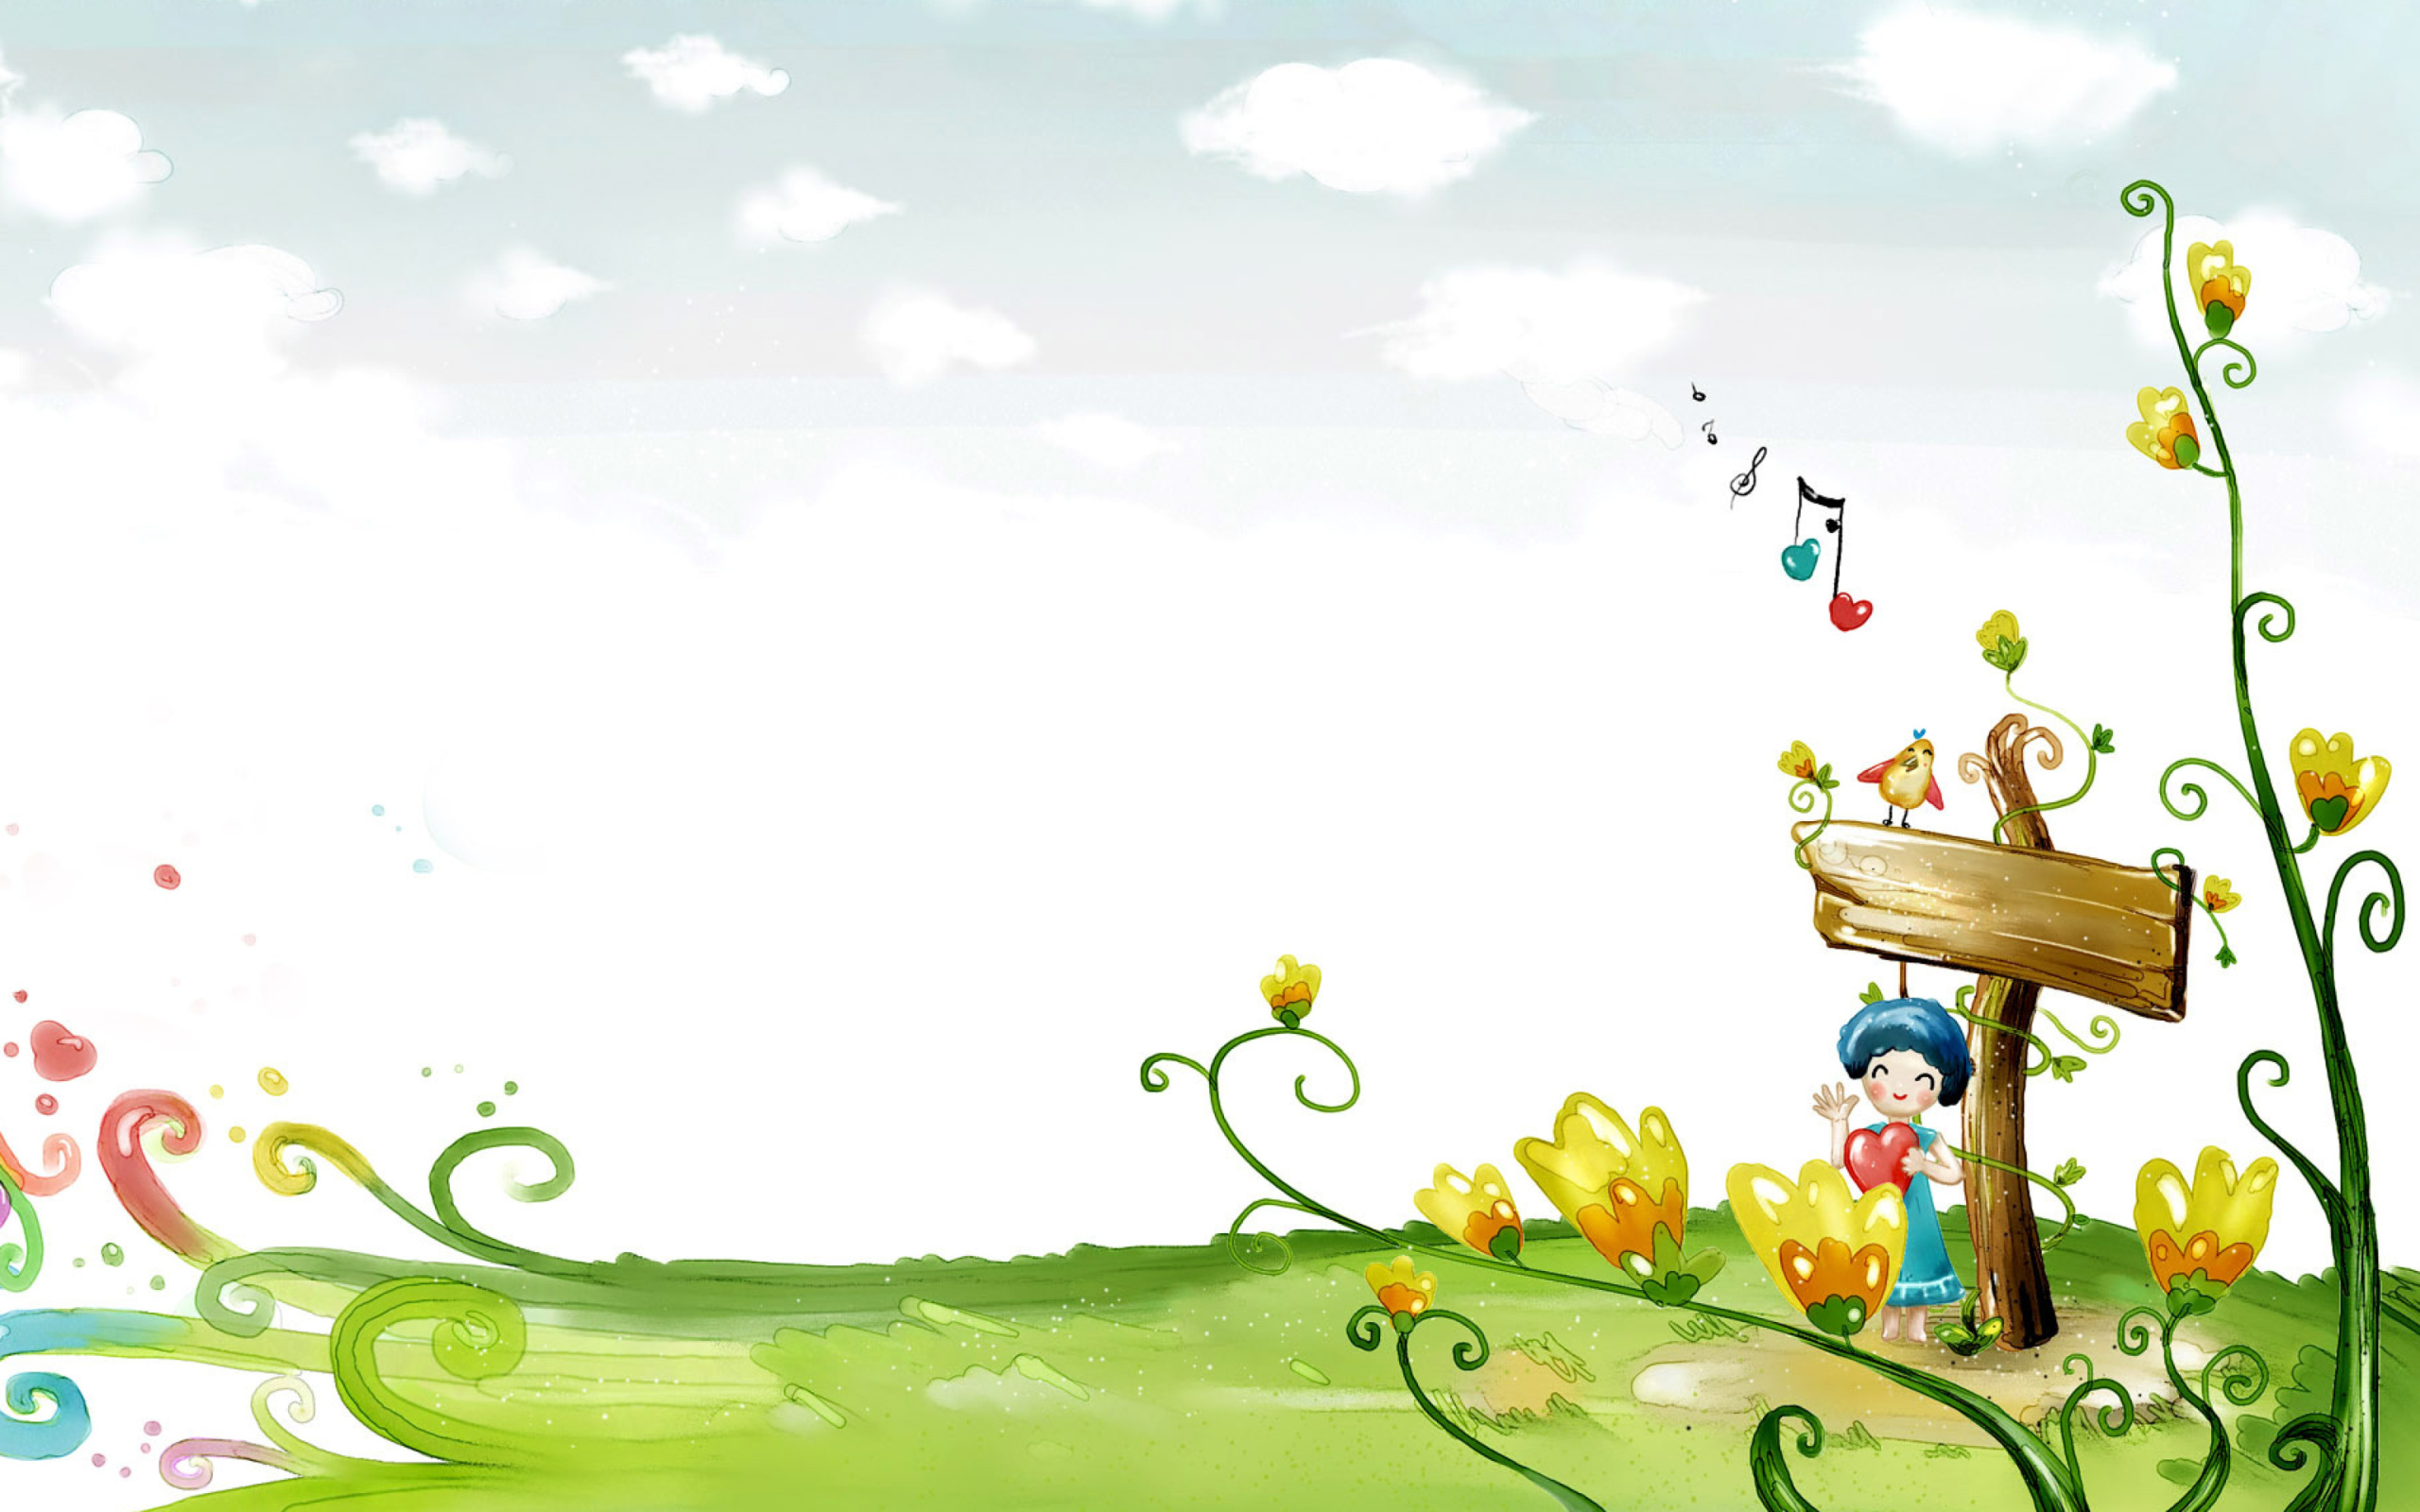 Fairyland Illustration wallpaper 2560x1600